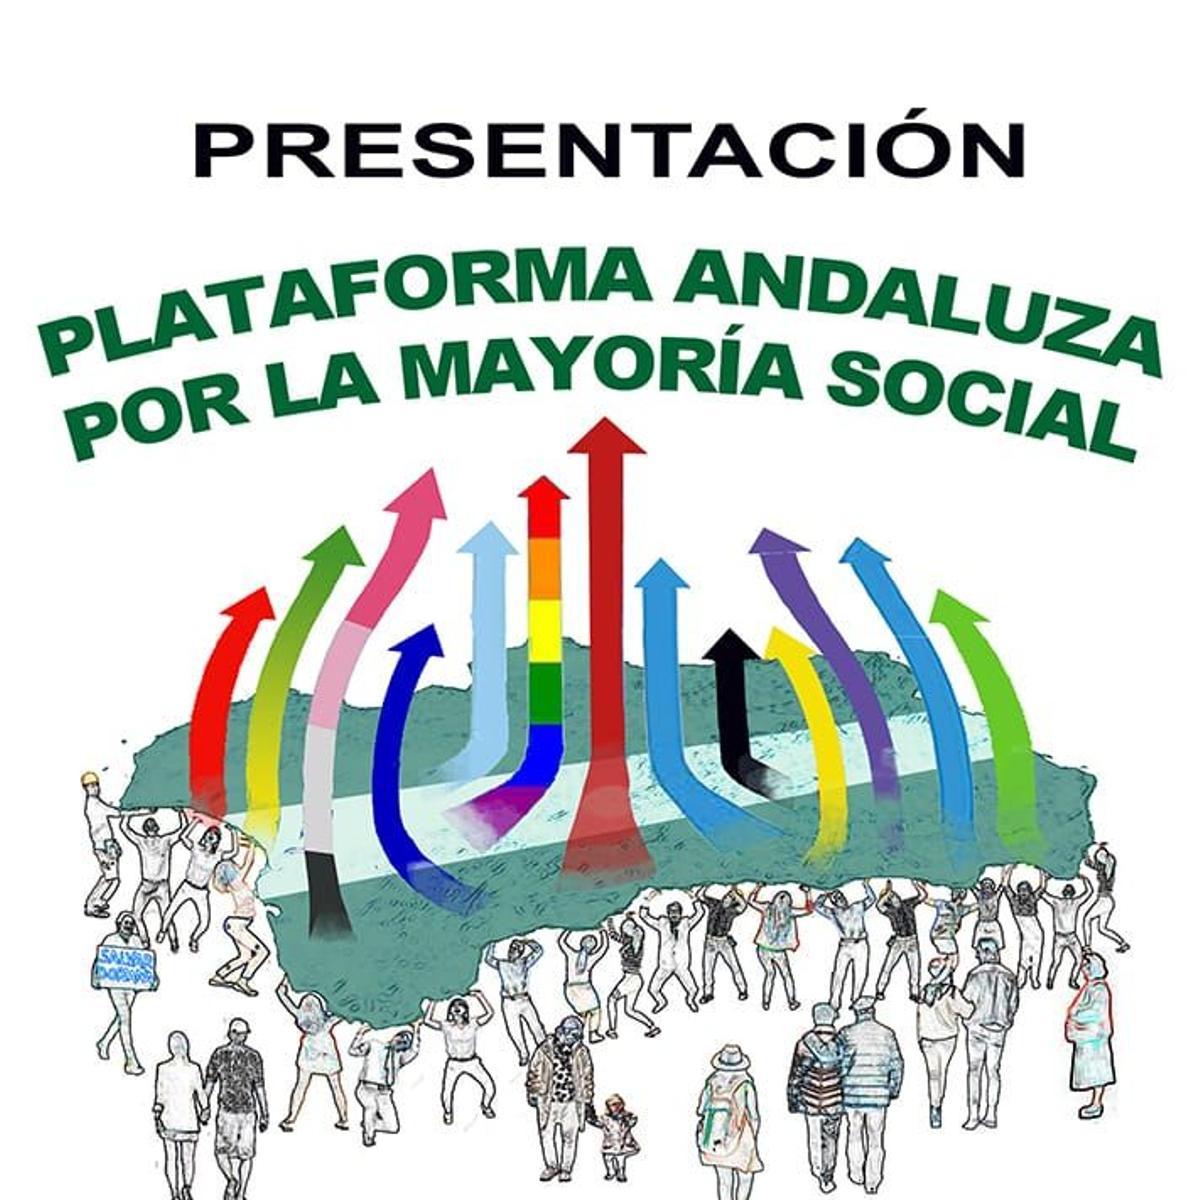 Imagen de la presentación de la nueva plataforma andaluza en defensa de la público en Sevilla.